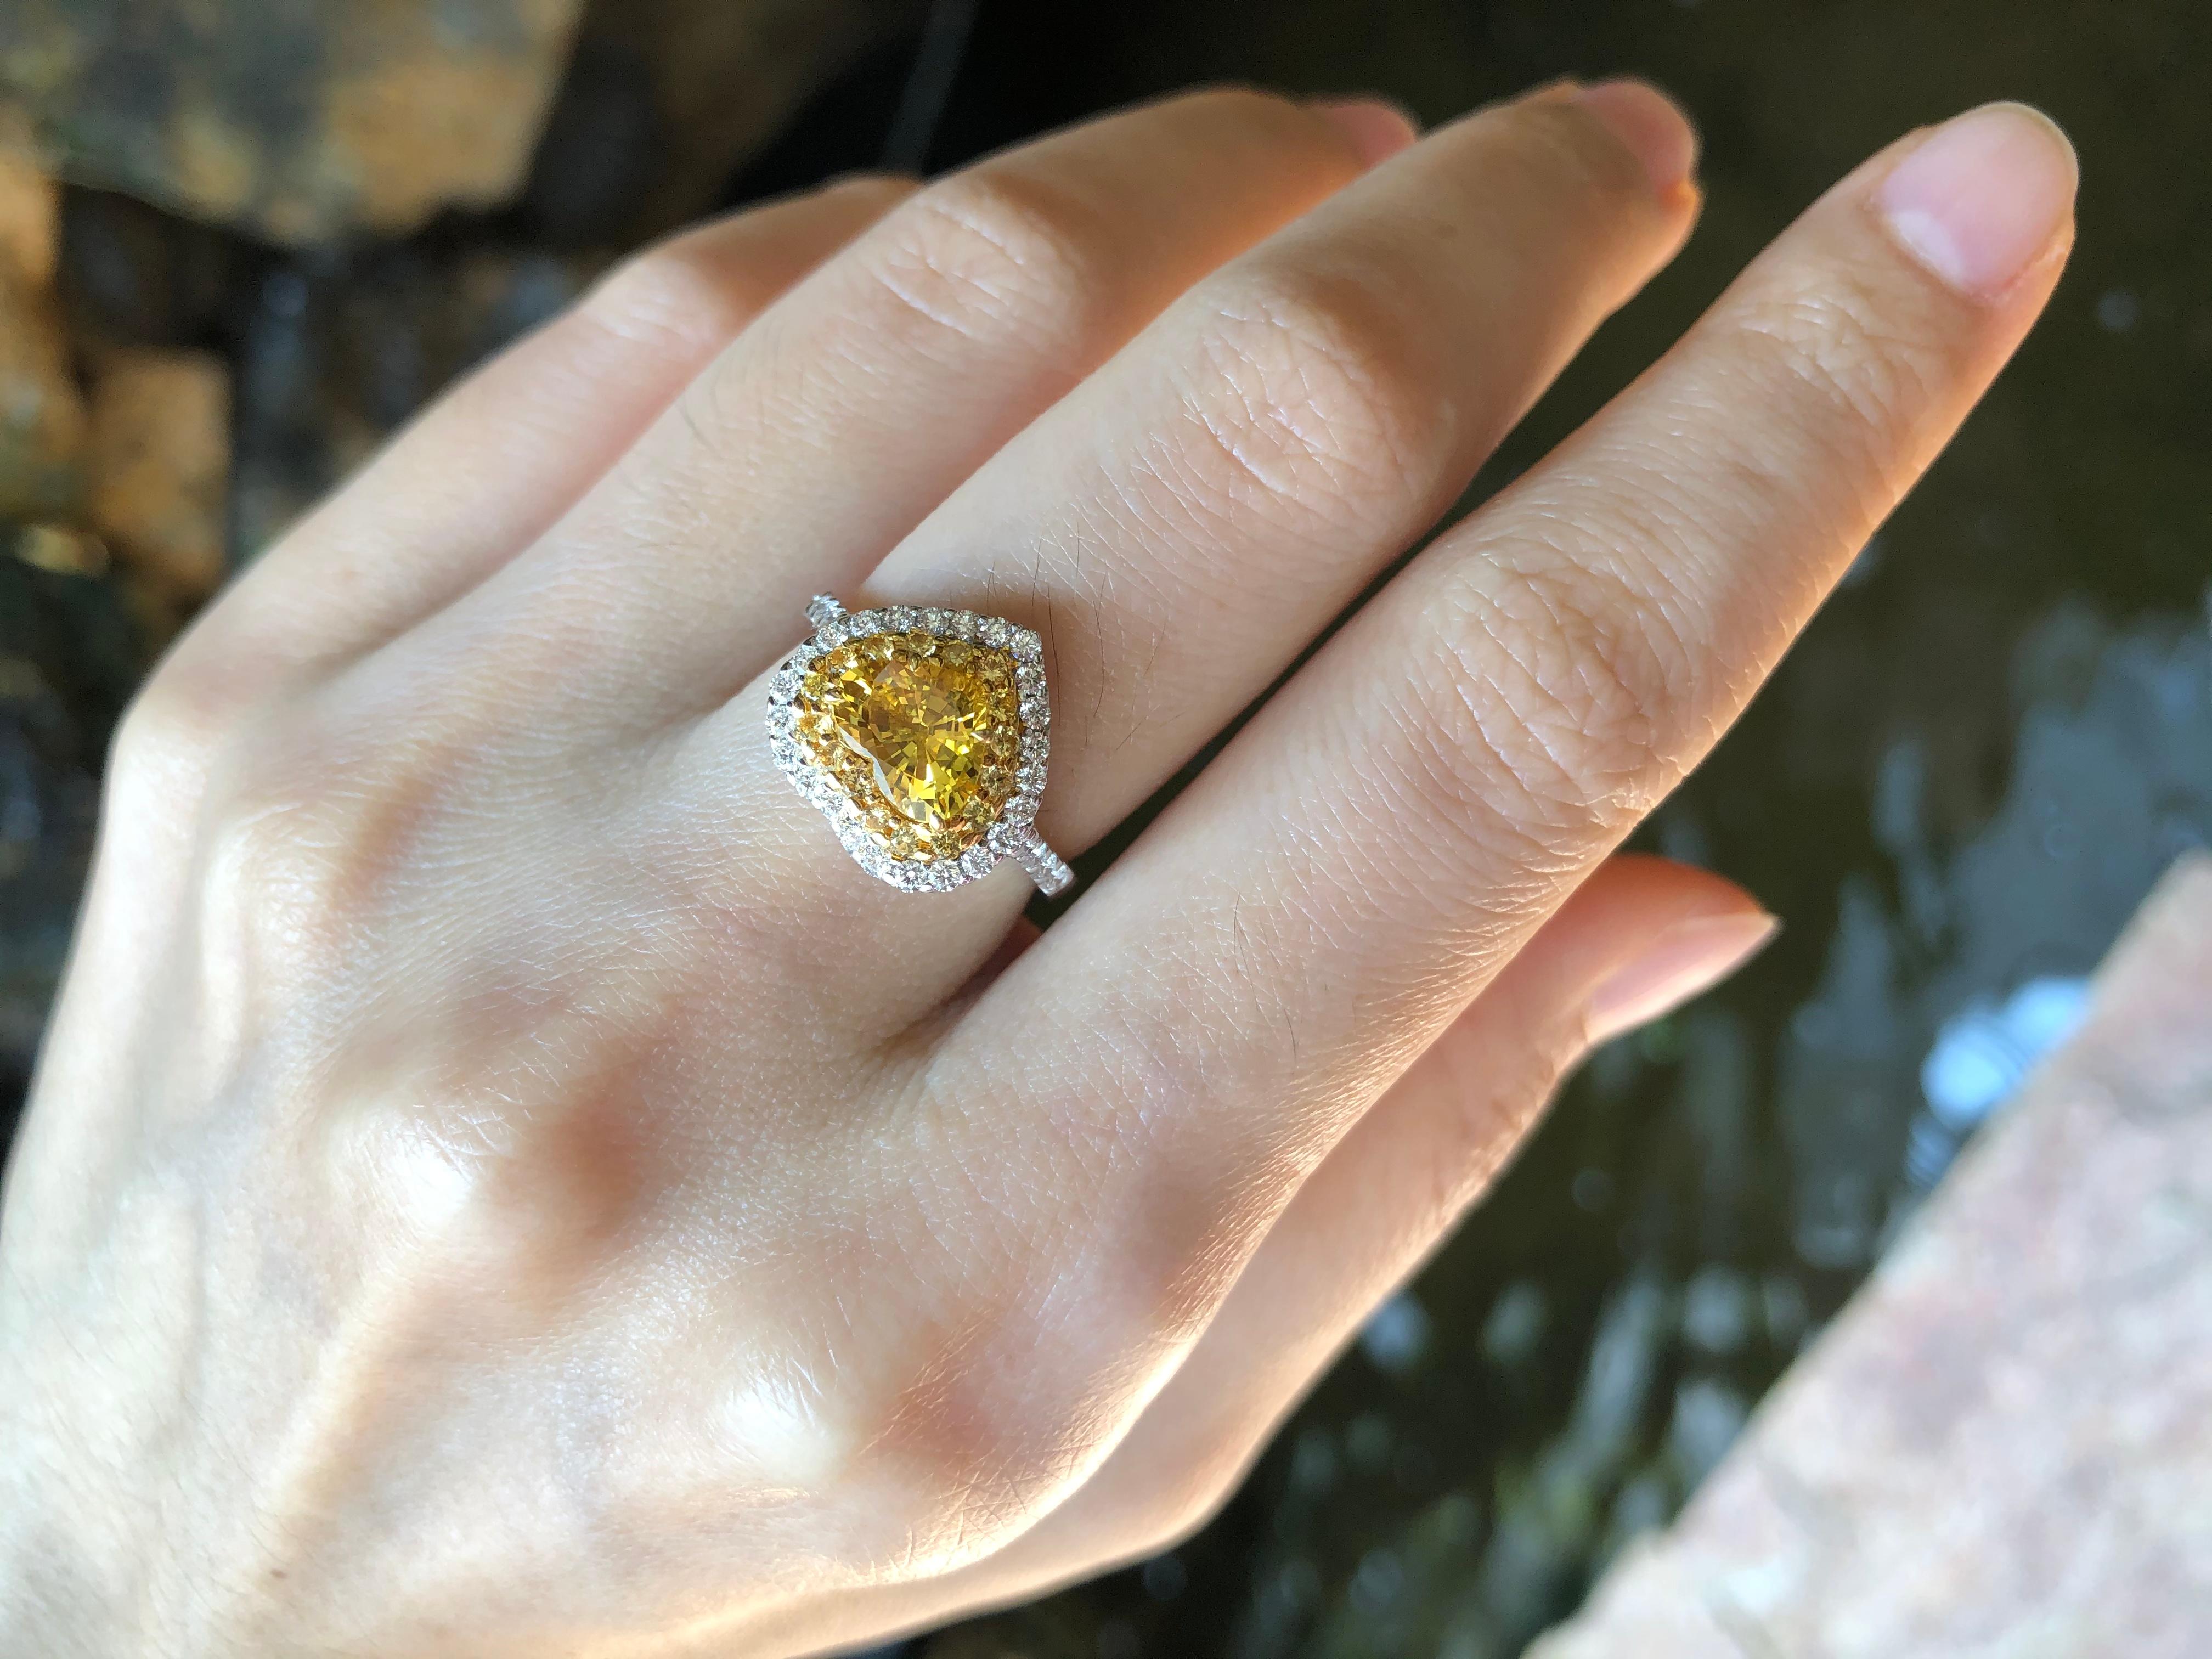 Bague en saphir jaune de 1,37 carat, diamant de 0,36 carat et saphir jaune de 0,21 carat, montés sur or blanc 18 carats

Largeur :  1.3 cm 
Longueur : 1,3 cm
Taille de l'anneau : 51
Poids total : 4,03 grammes

